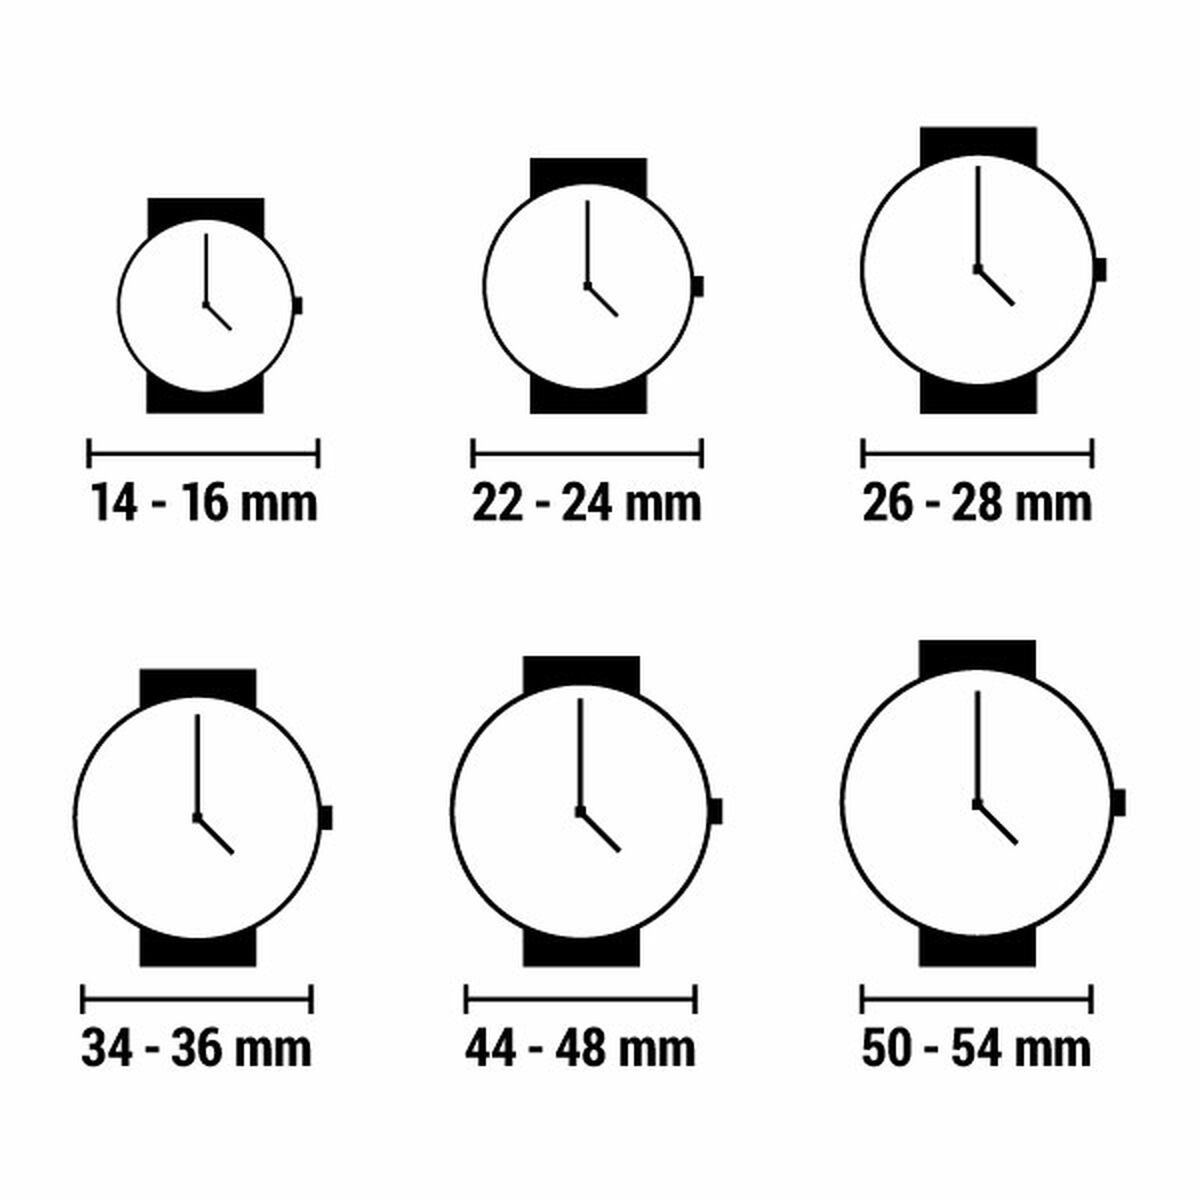 Horloge Dames Watx & Colors WXCA3036  (Ø 38 mm)